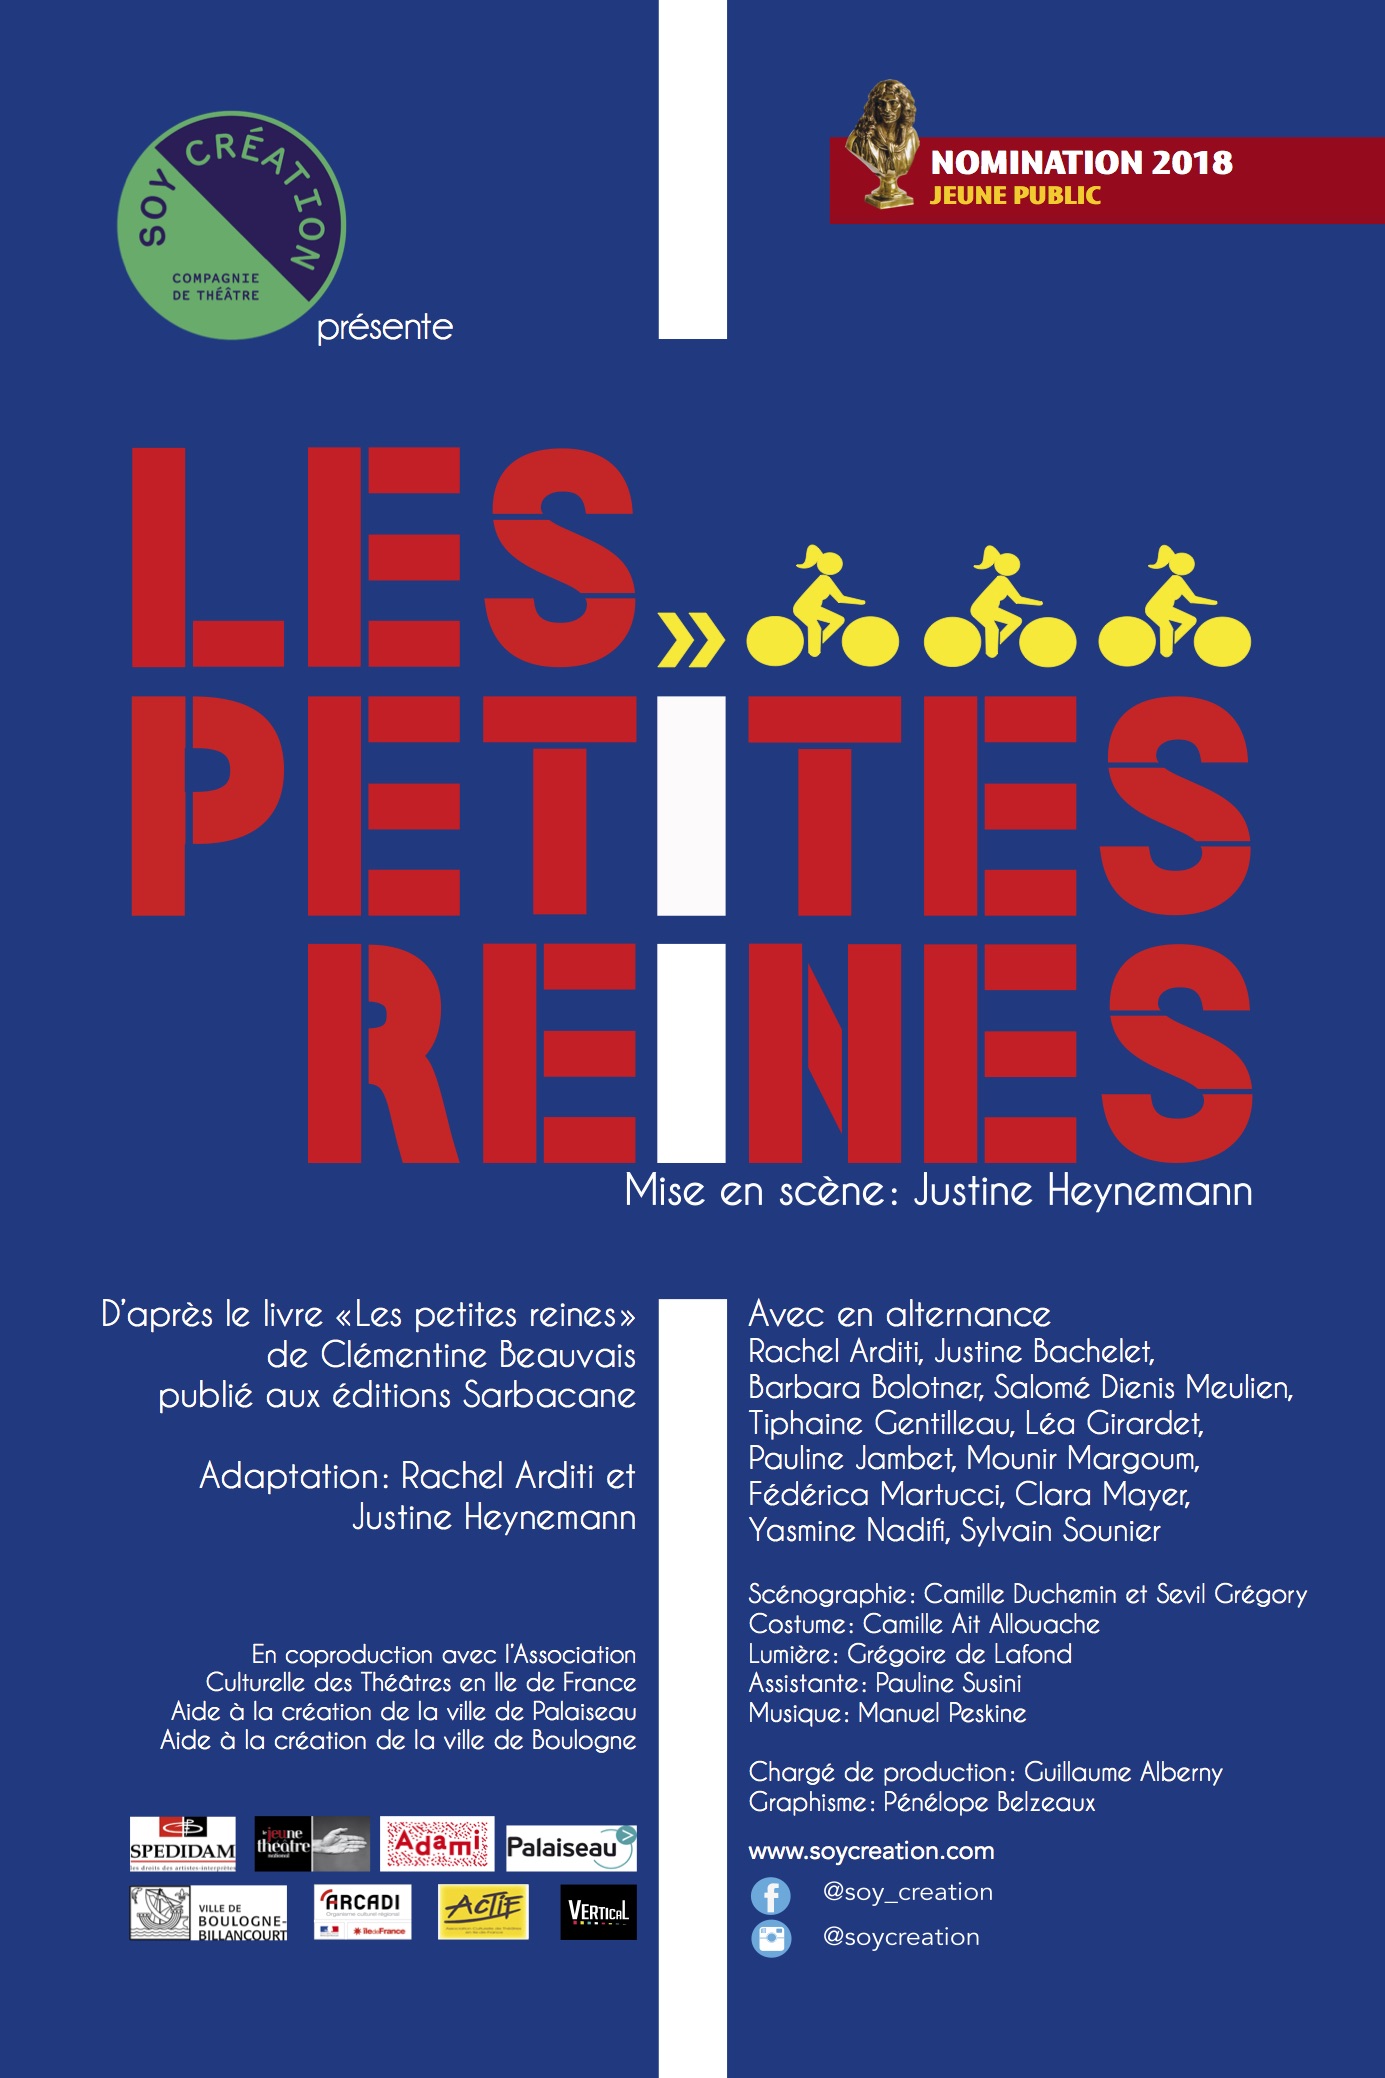 Les Petites Reines book by Clémentine Beauvais